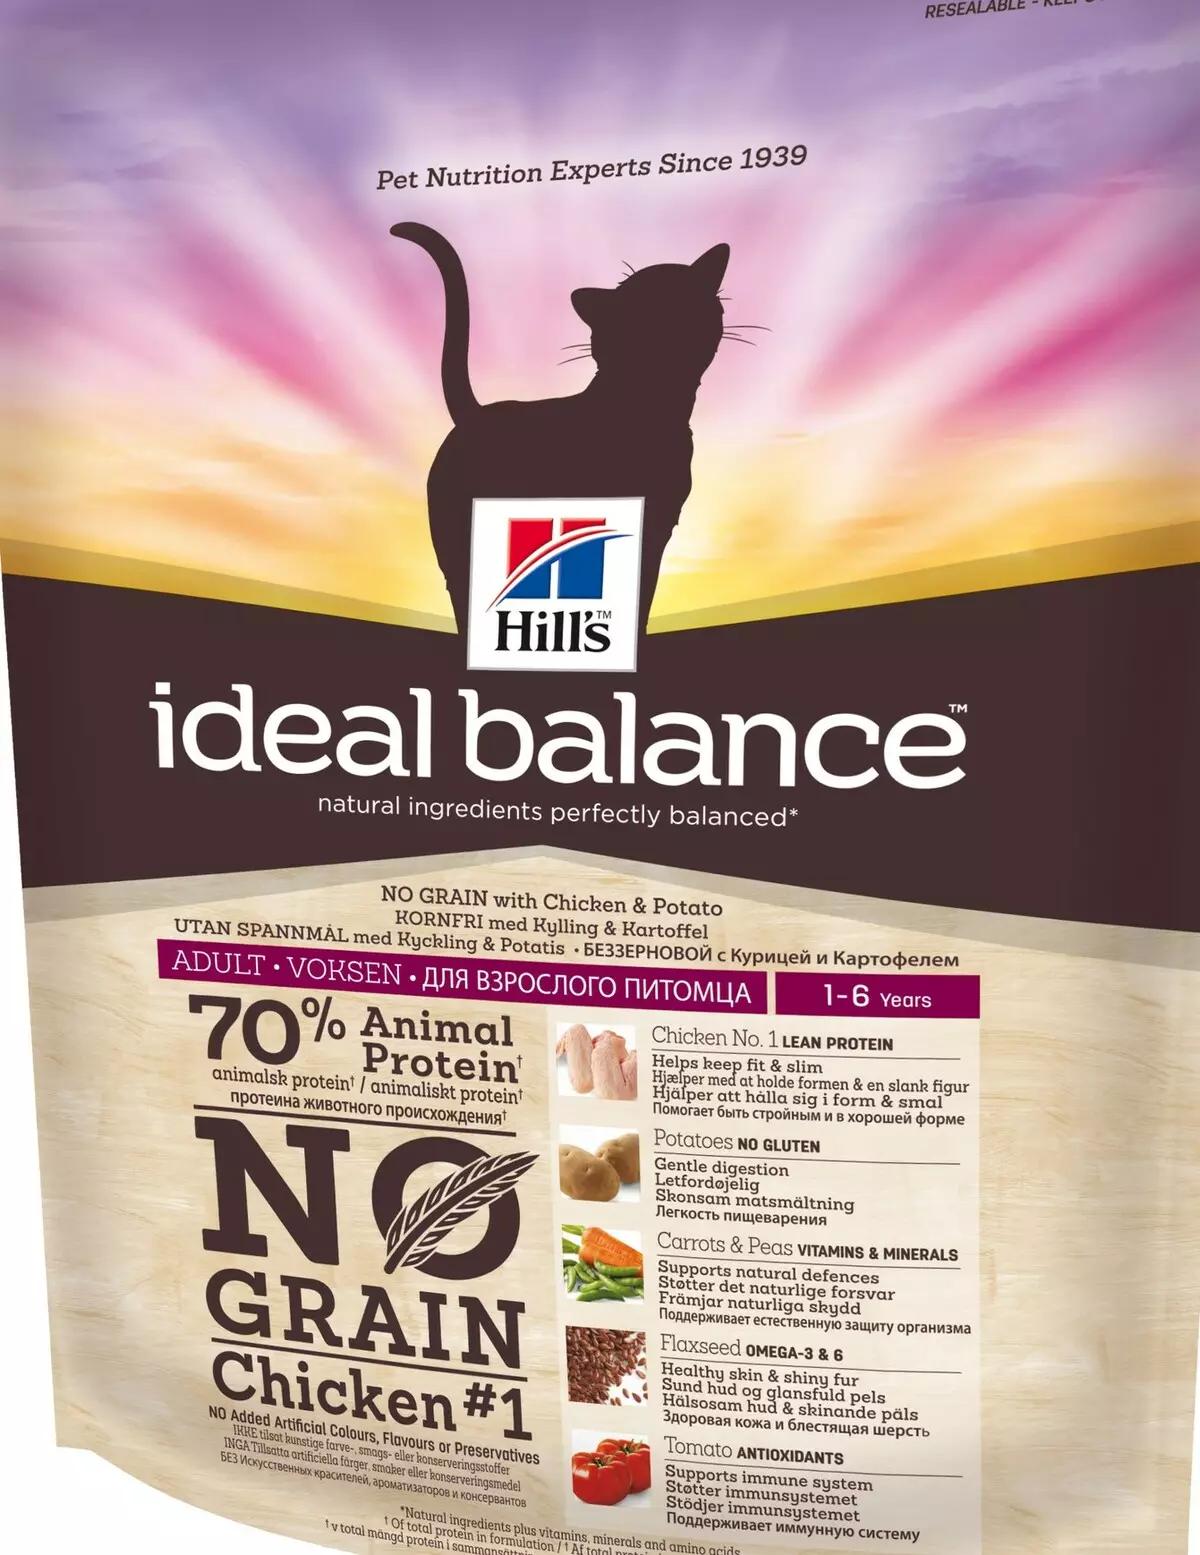 Hill's Cat Feed: Sammensetning av Feline Feed. Hermetisert mat for katter. Er de den beste Purina Pro Plan og Royal Canin? Fôr med grønnsaker og kylling. Vurderinger. 22688_17